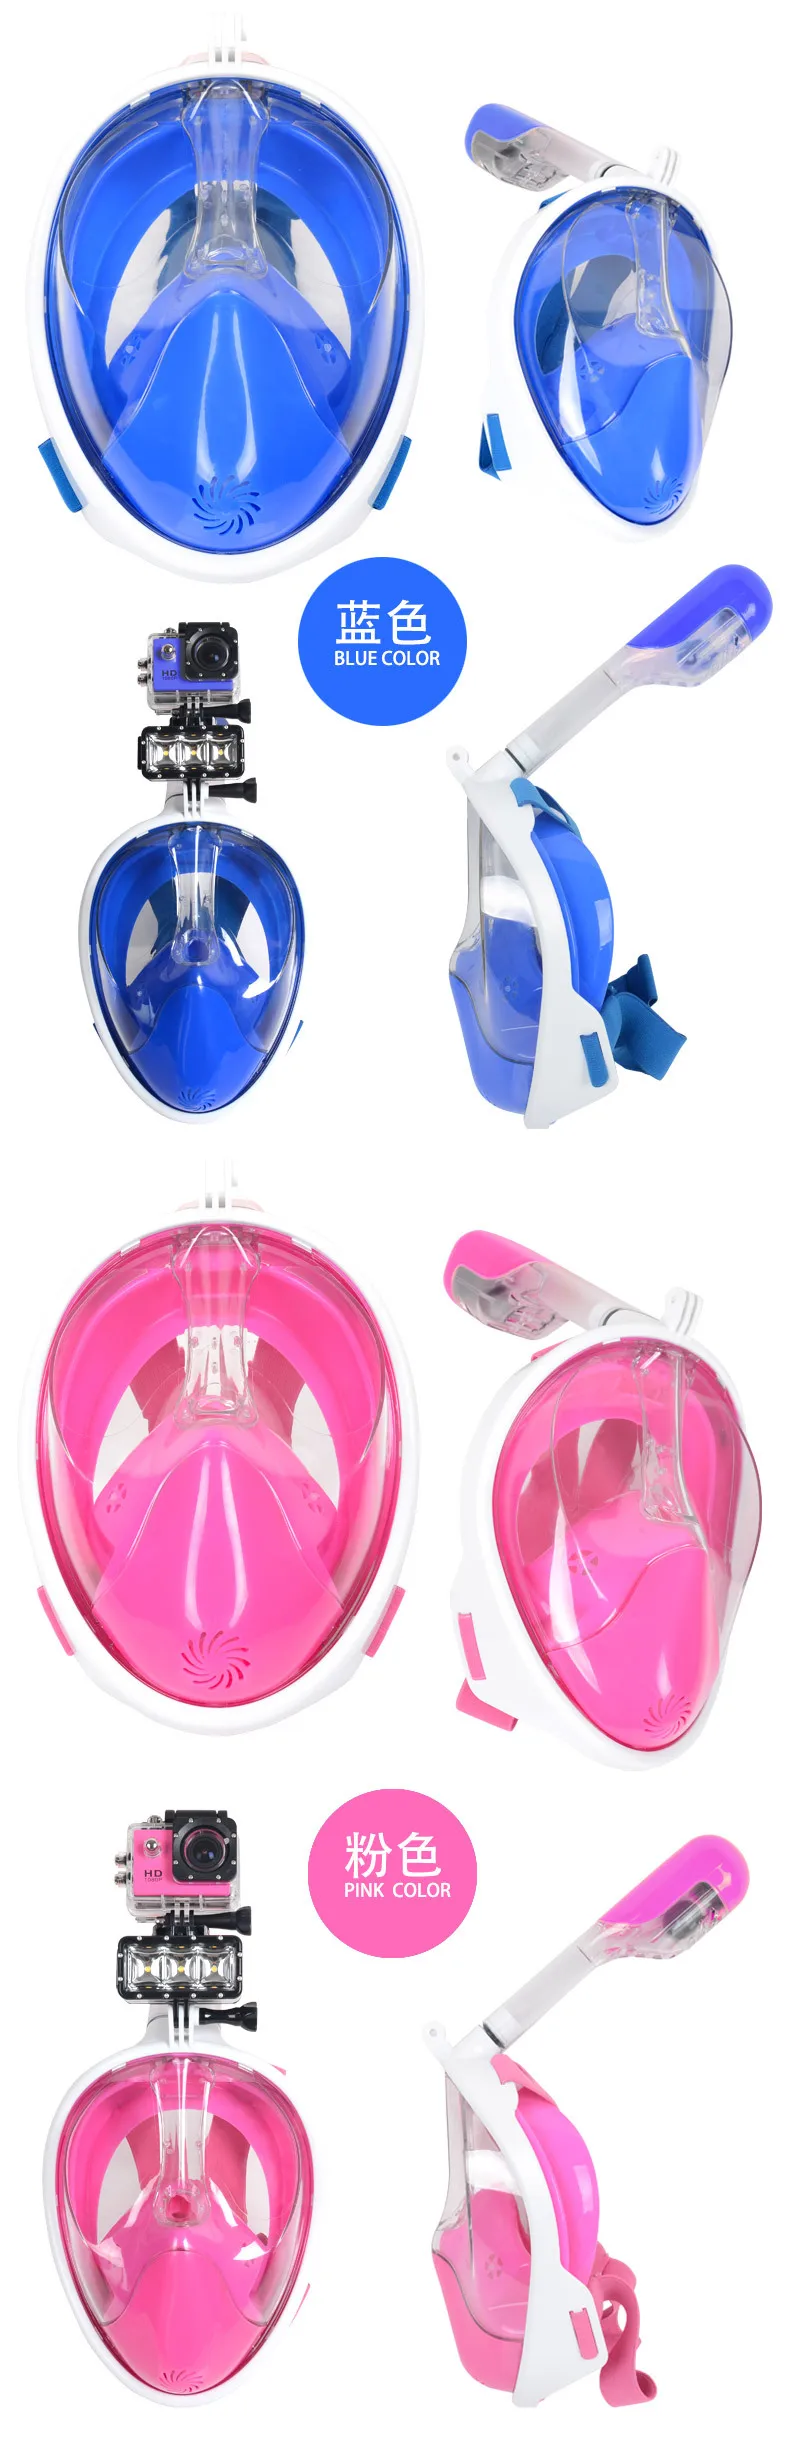 12 шт./лот, профессиональная маска для всего лица, набор для подводного плавания, плавательный бассейн, Piscina, трубка, морская подводная Подводная охота, маска для дайвинга